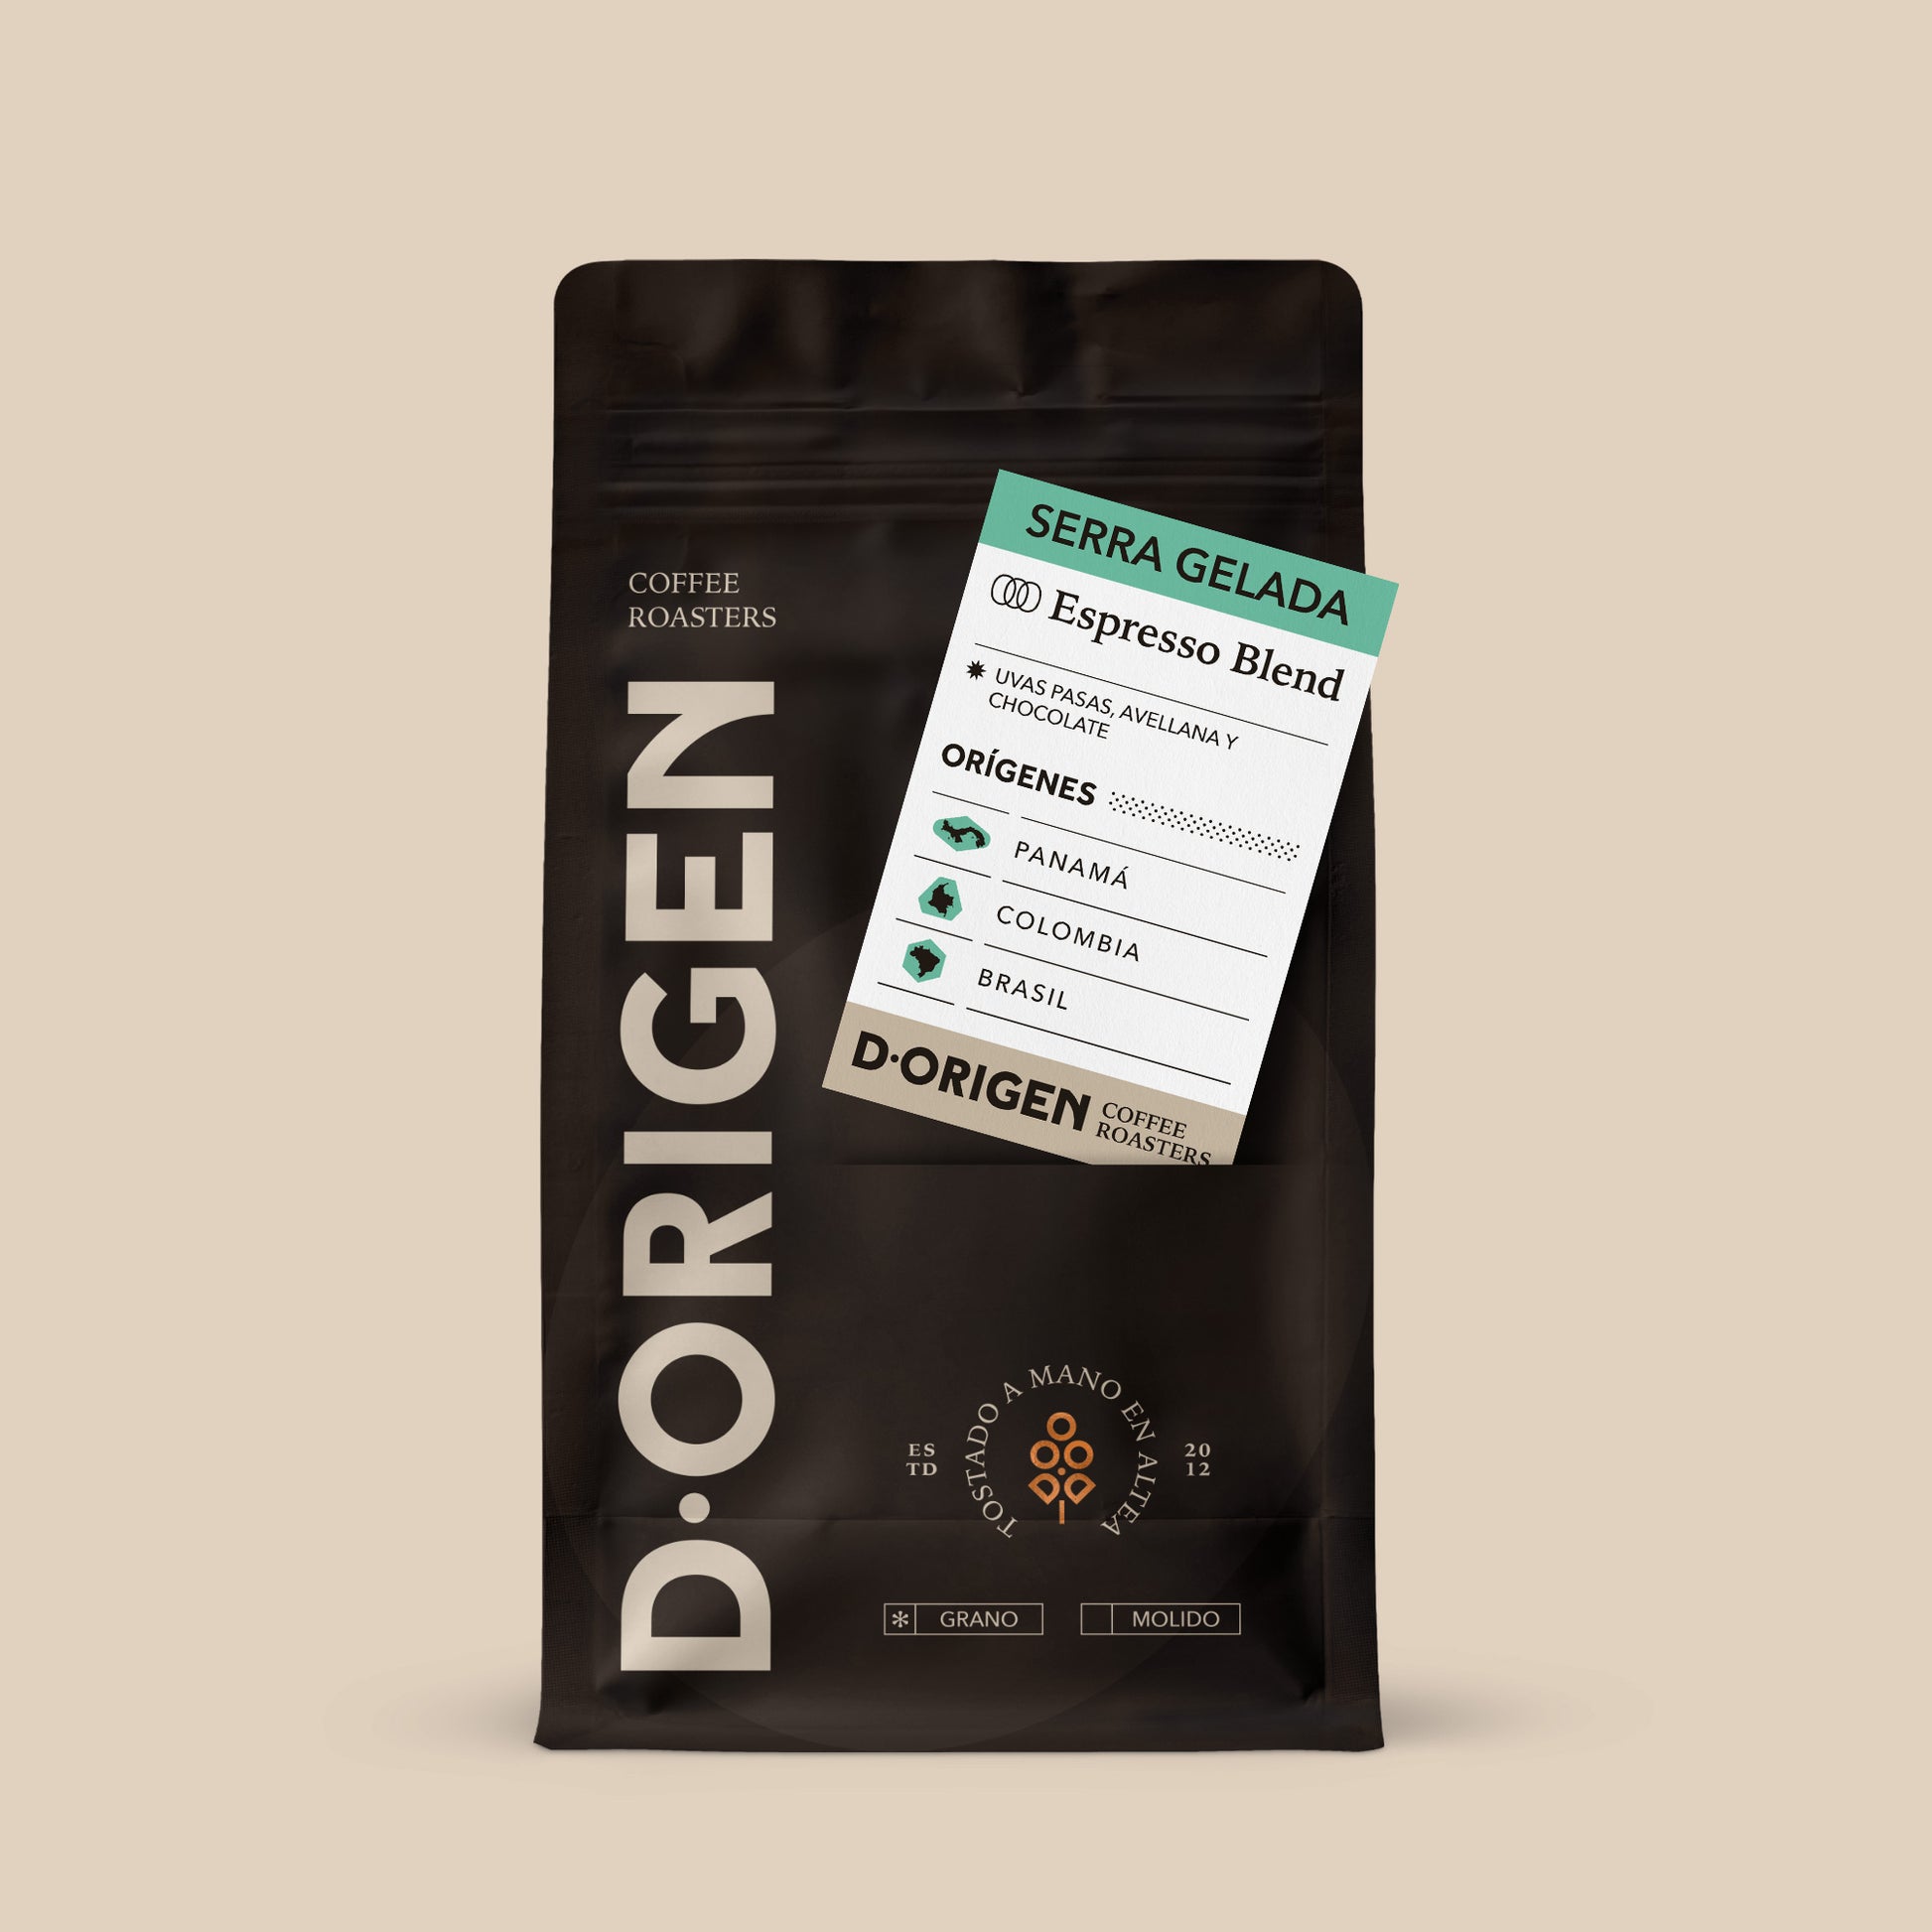 SERRA GELADA - D·Origen Coffee Roasters